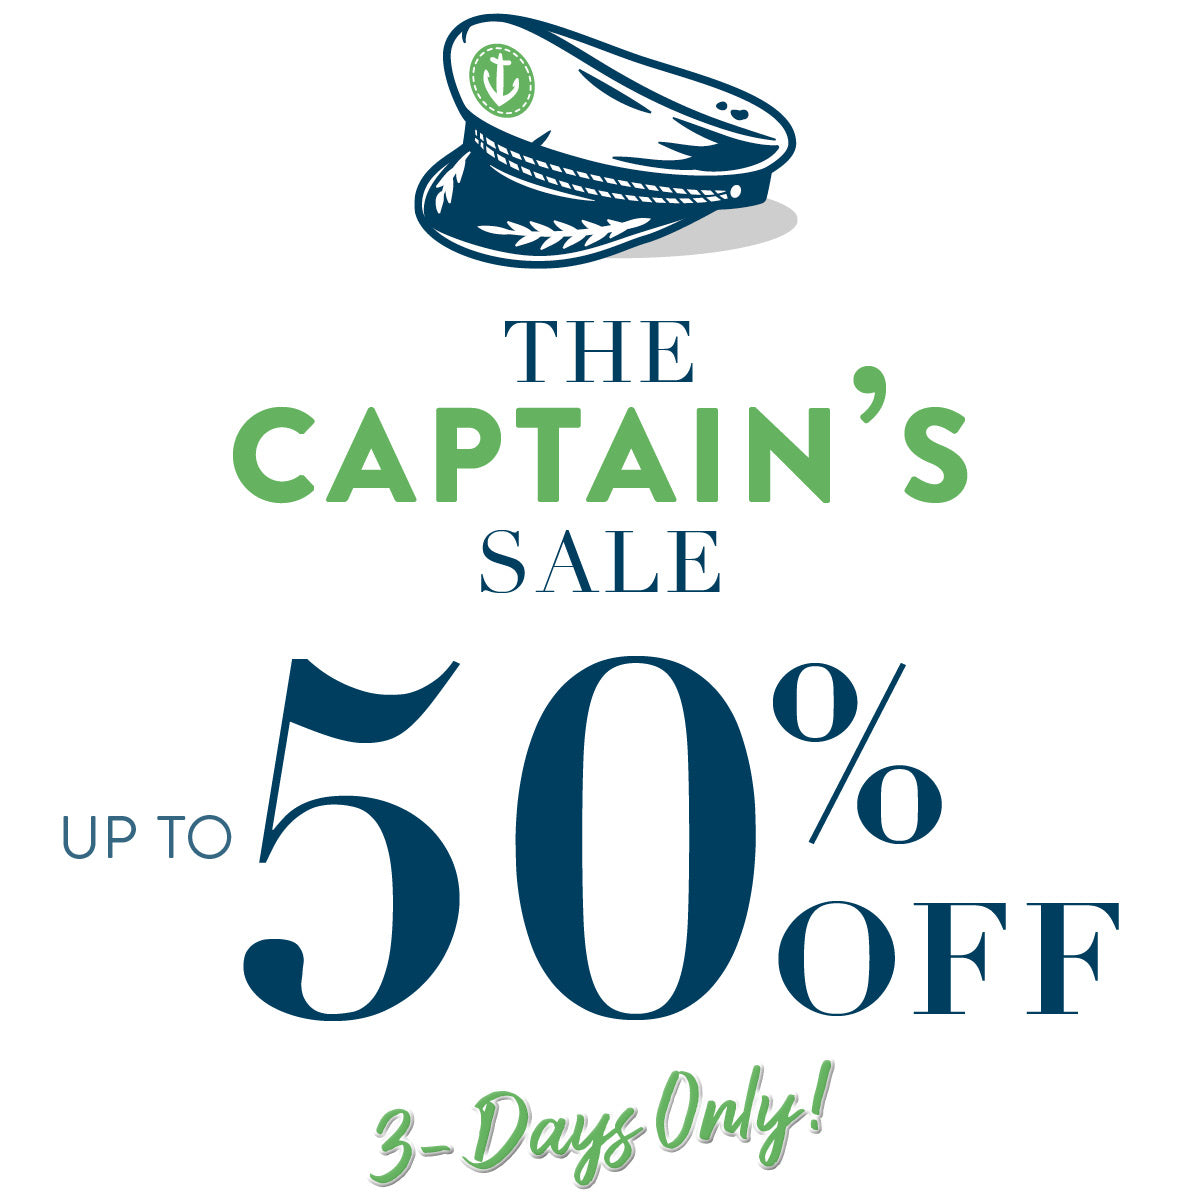 The Captain's Sale